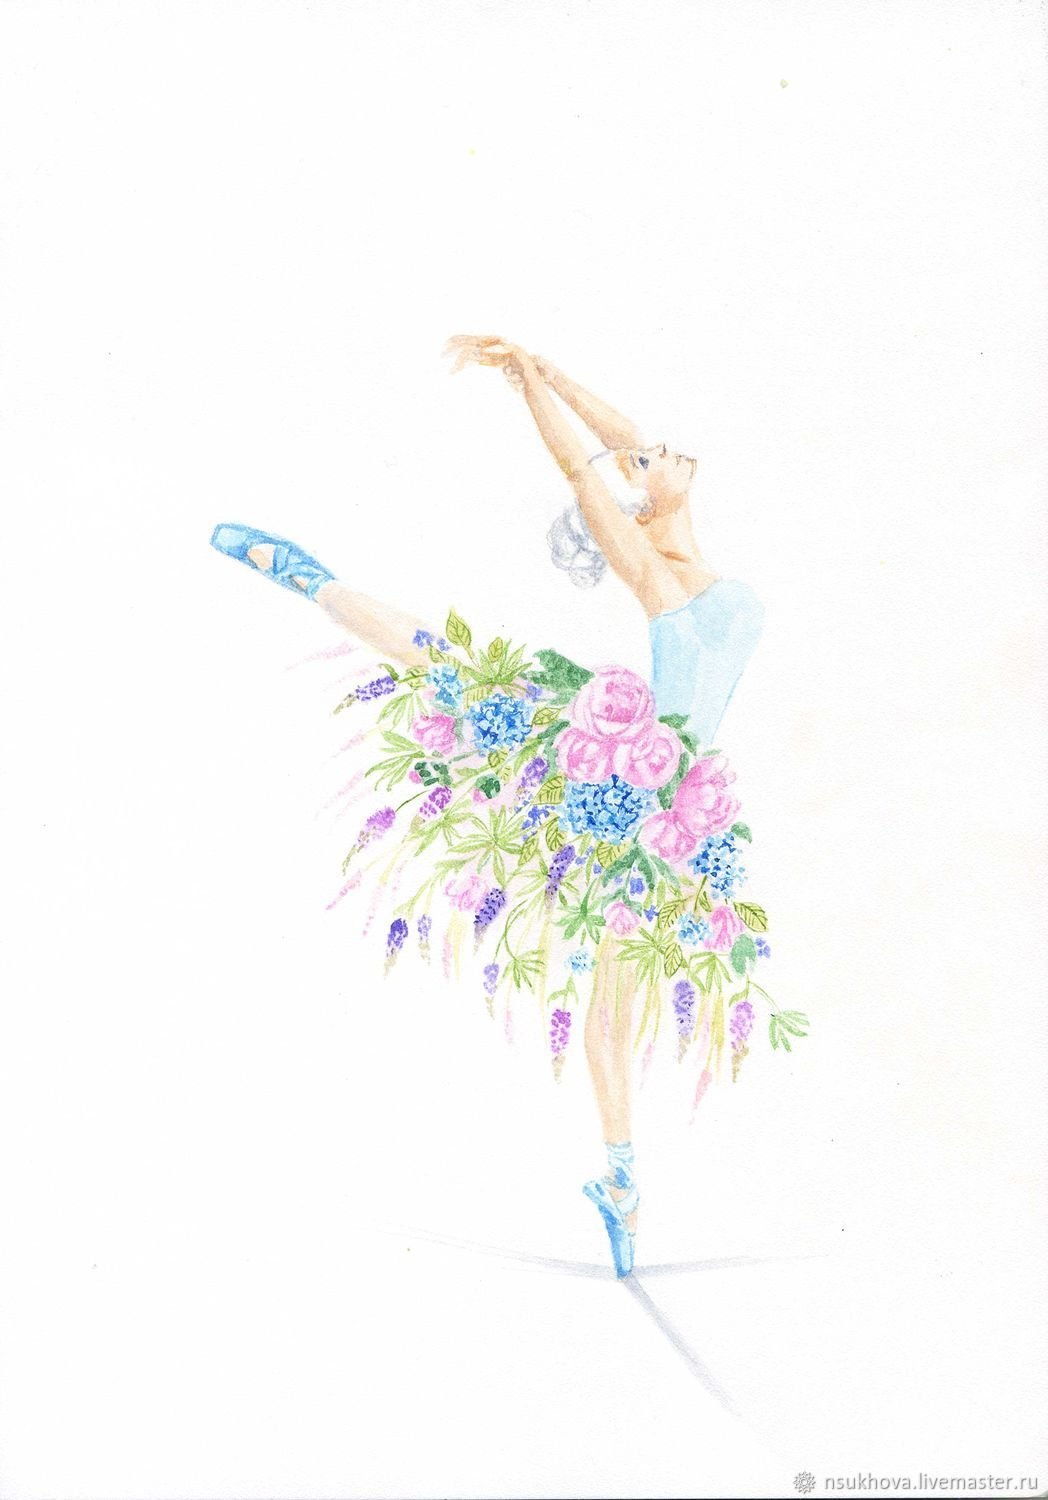 Балерина и цветы — фотосерия о сходстве двух изяществ